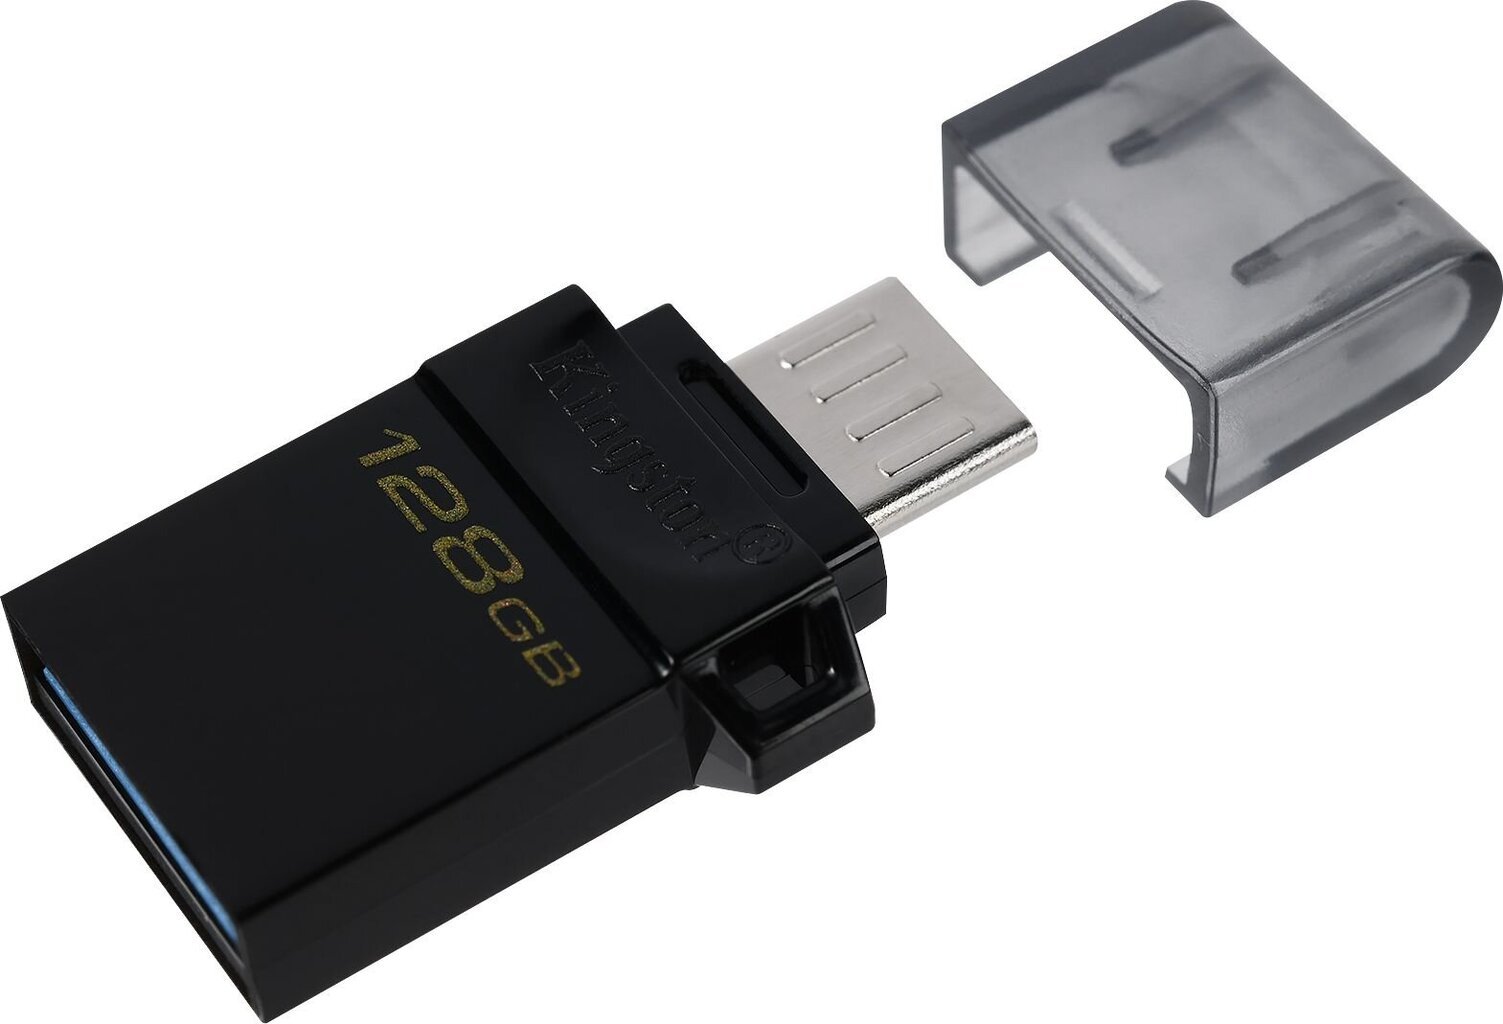 Kingston DTDUO3G2/128GB kaina ir informacija | USB laikmenos | pigu.lt